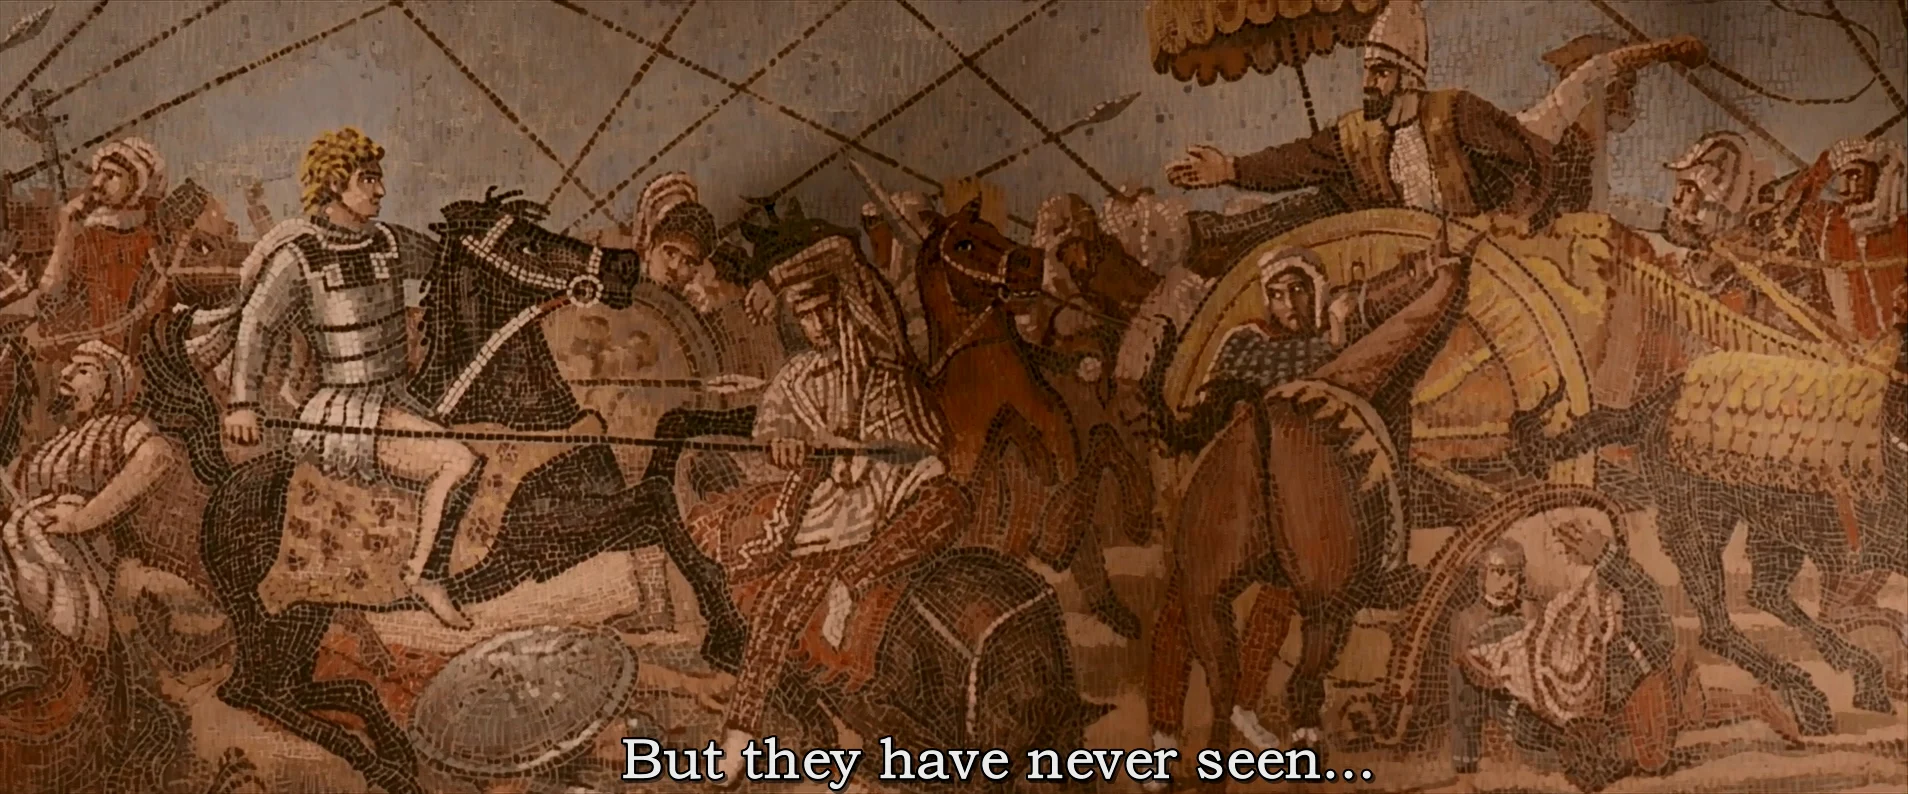 电影《亚历山大》里也出现过这幅画，不过画风有略微变化。一般认为，罗马人的复制品在画风上可能和原本的希腊画风有略微差异